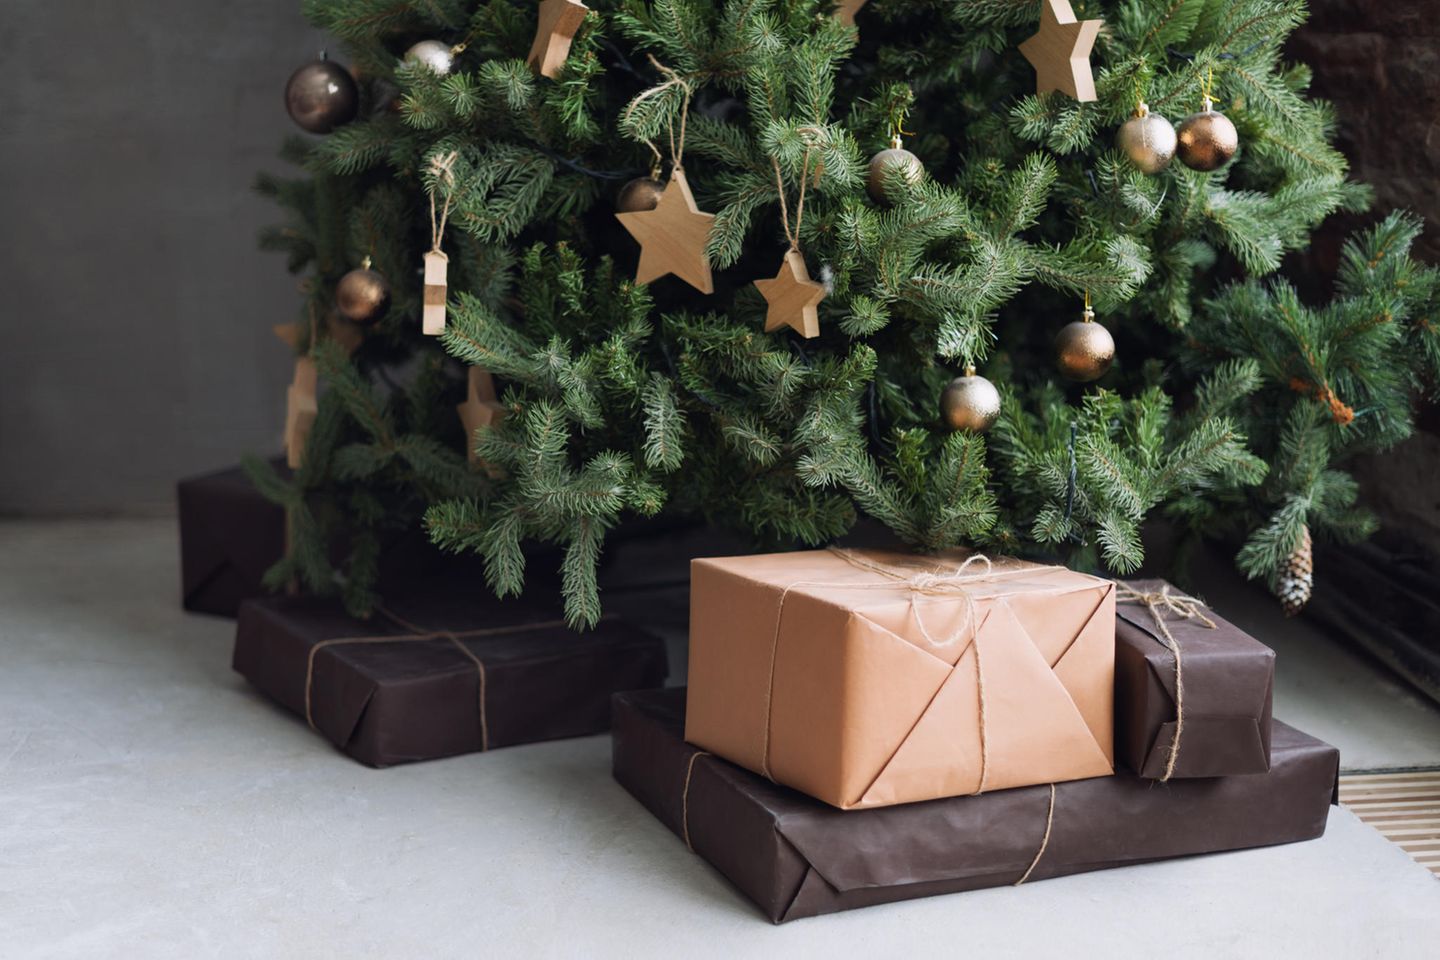 Unter einem Weihnachtsbaum liegen Geschenke